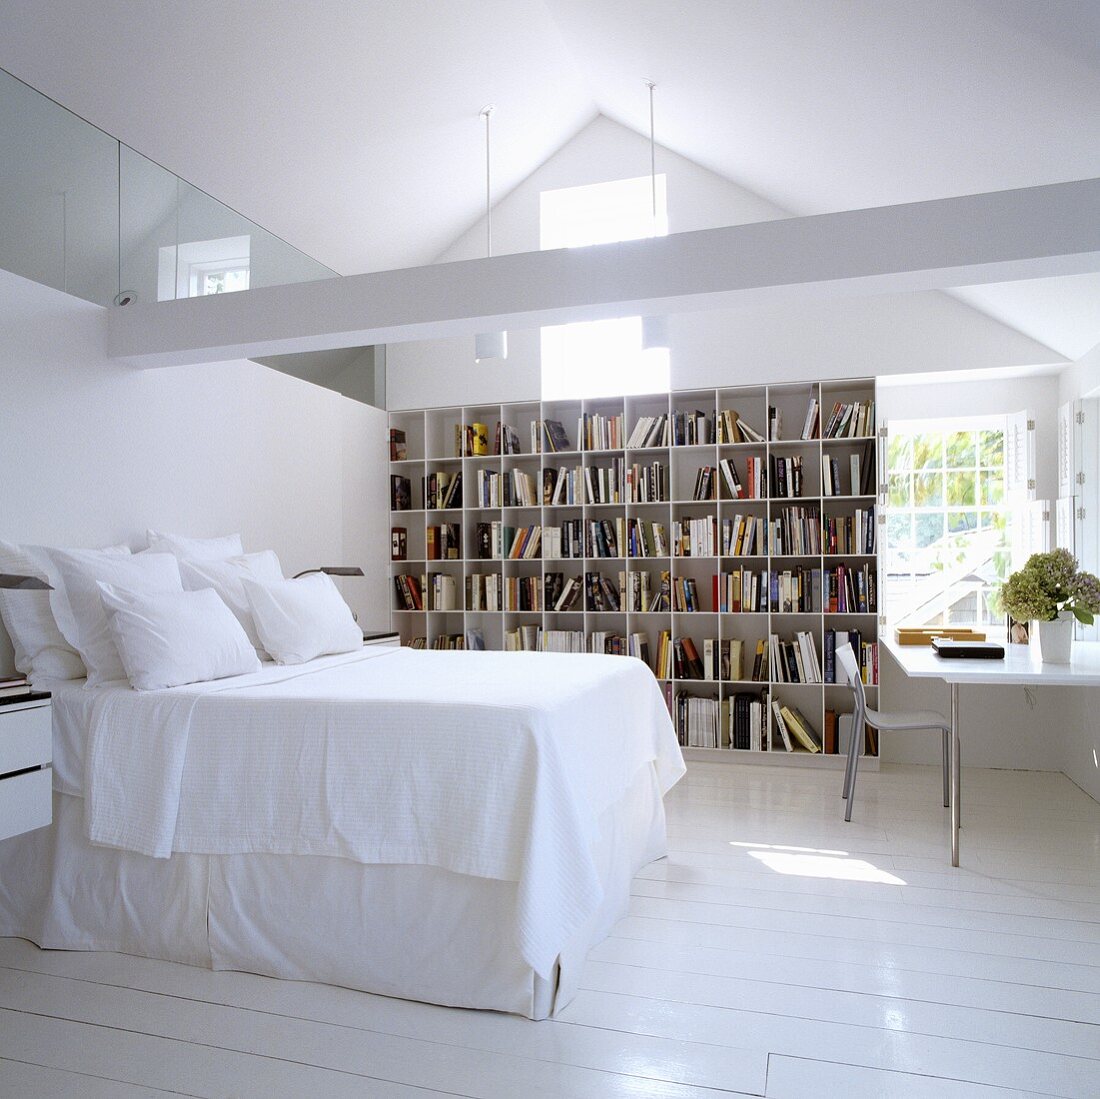 Schlafen im ausgebauten Dach mit Bücherregal und Arbeitsecke vor Giebelwand